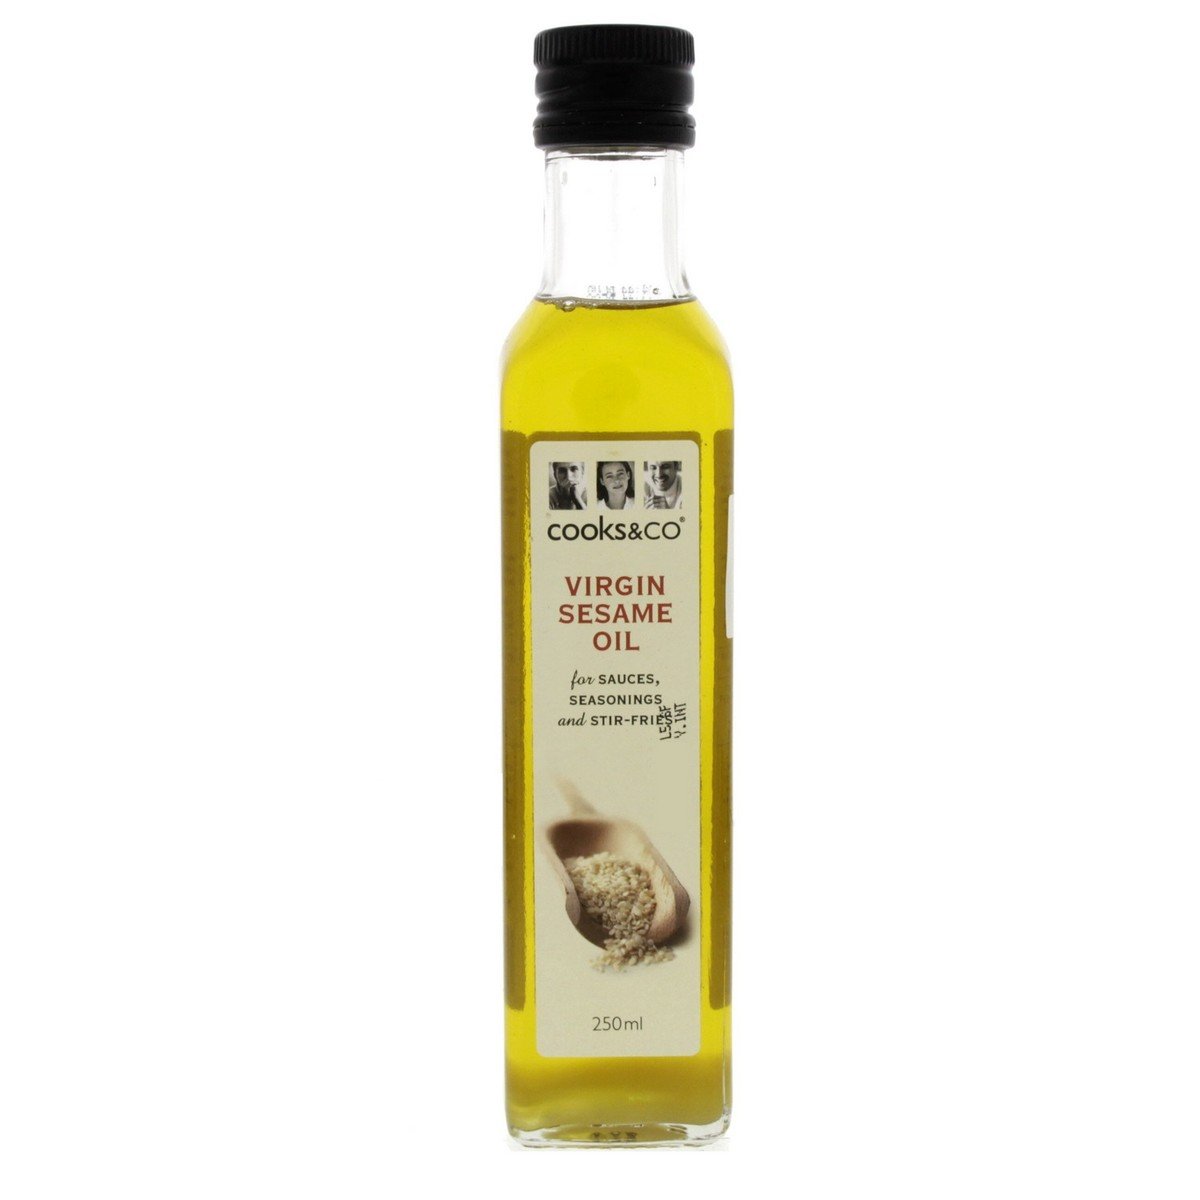 Cooks & Co Virgin Sesame Oil 250 ml